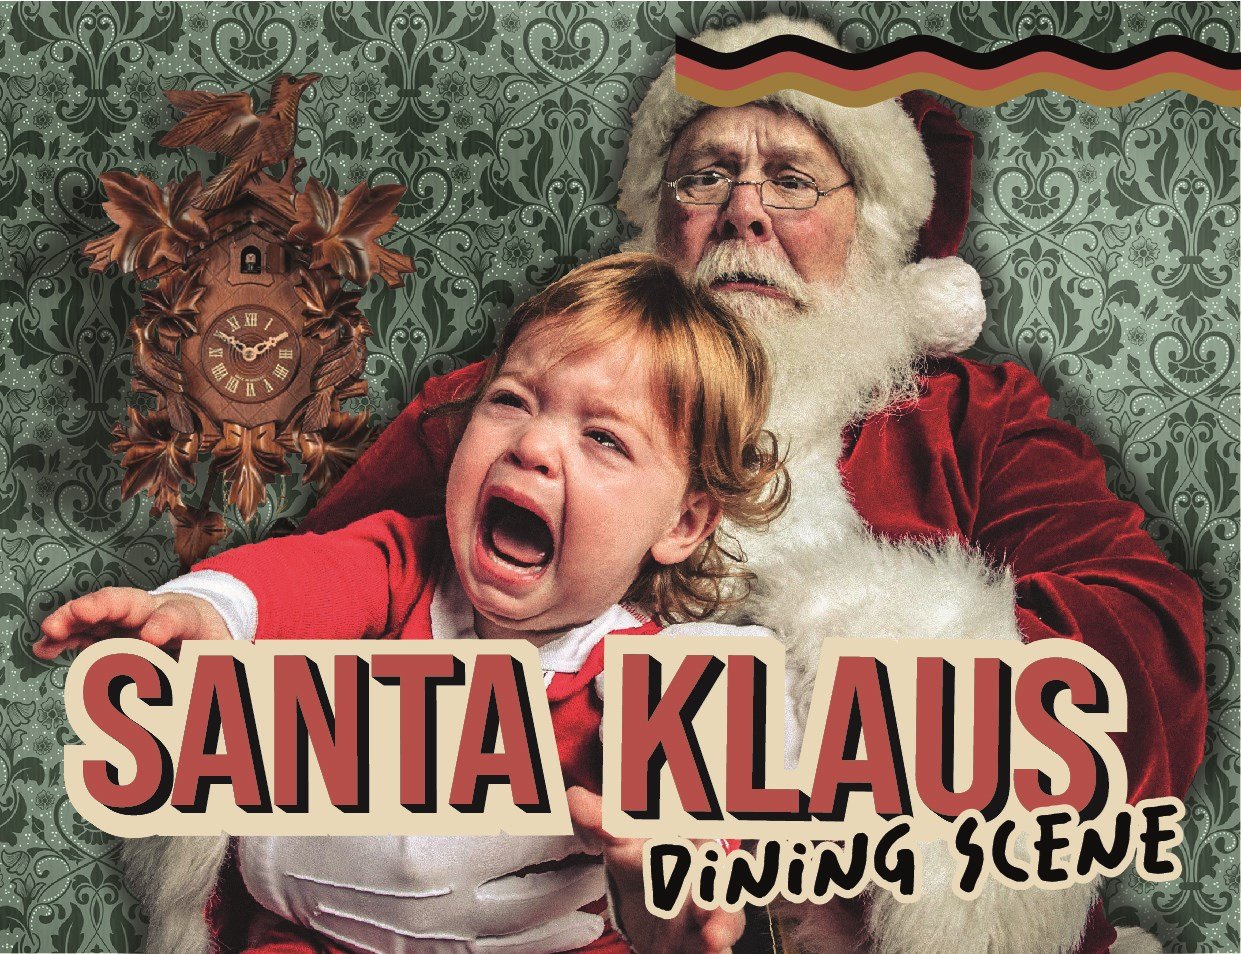 Santa Klaus dining scene